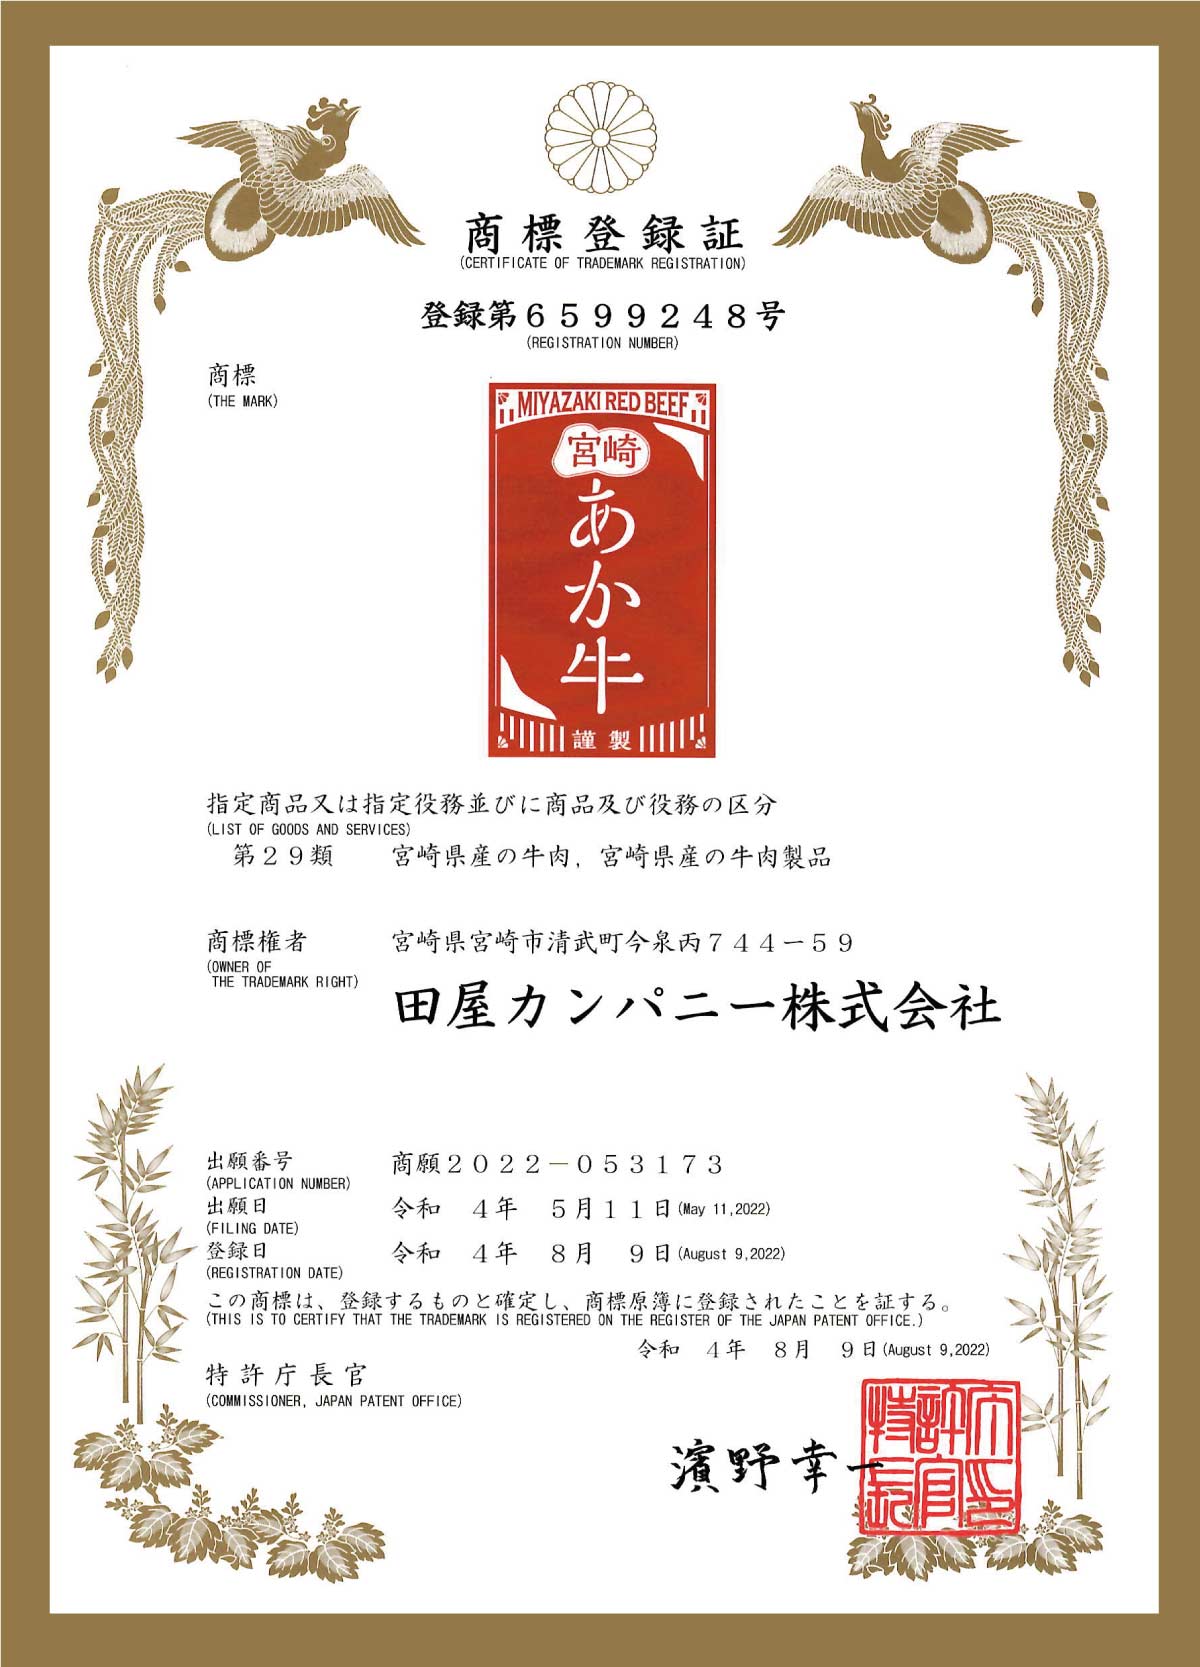 宮崎牛が全国和牛共進会で、日本一の内閣総理大臣賞を4大大会連続で受賞(2022.10 現在)